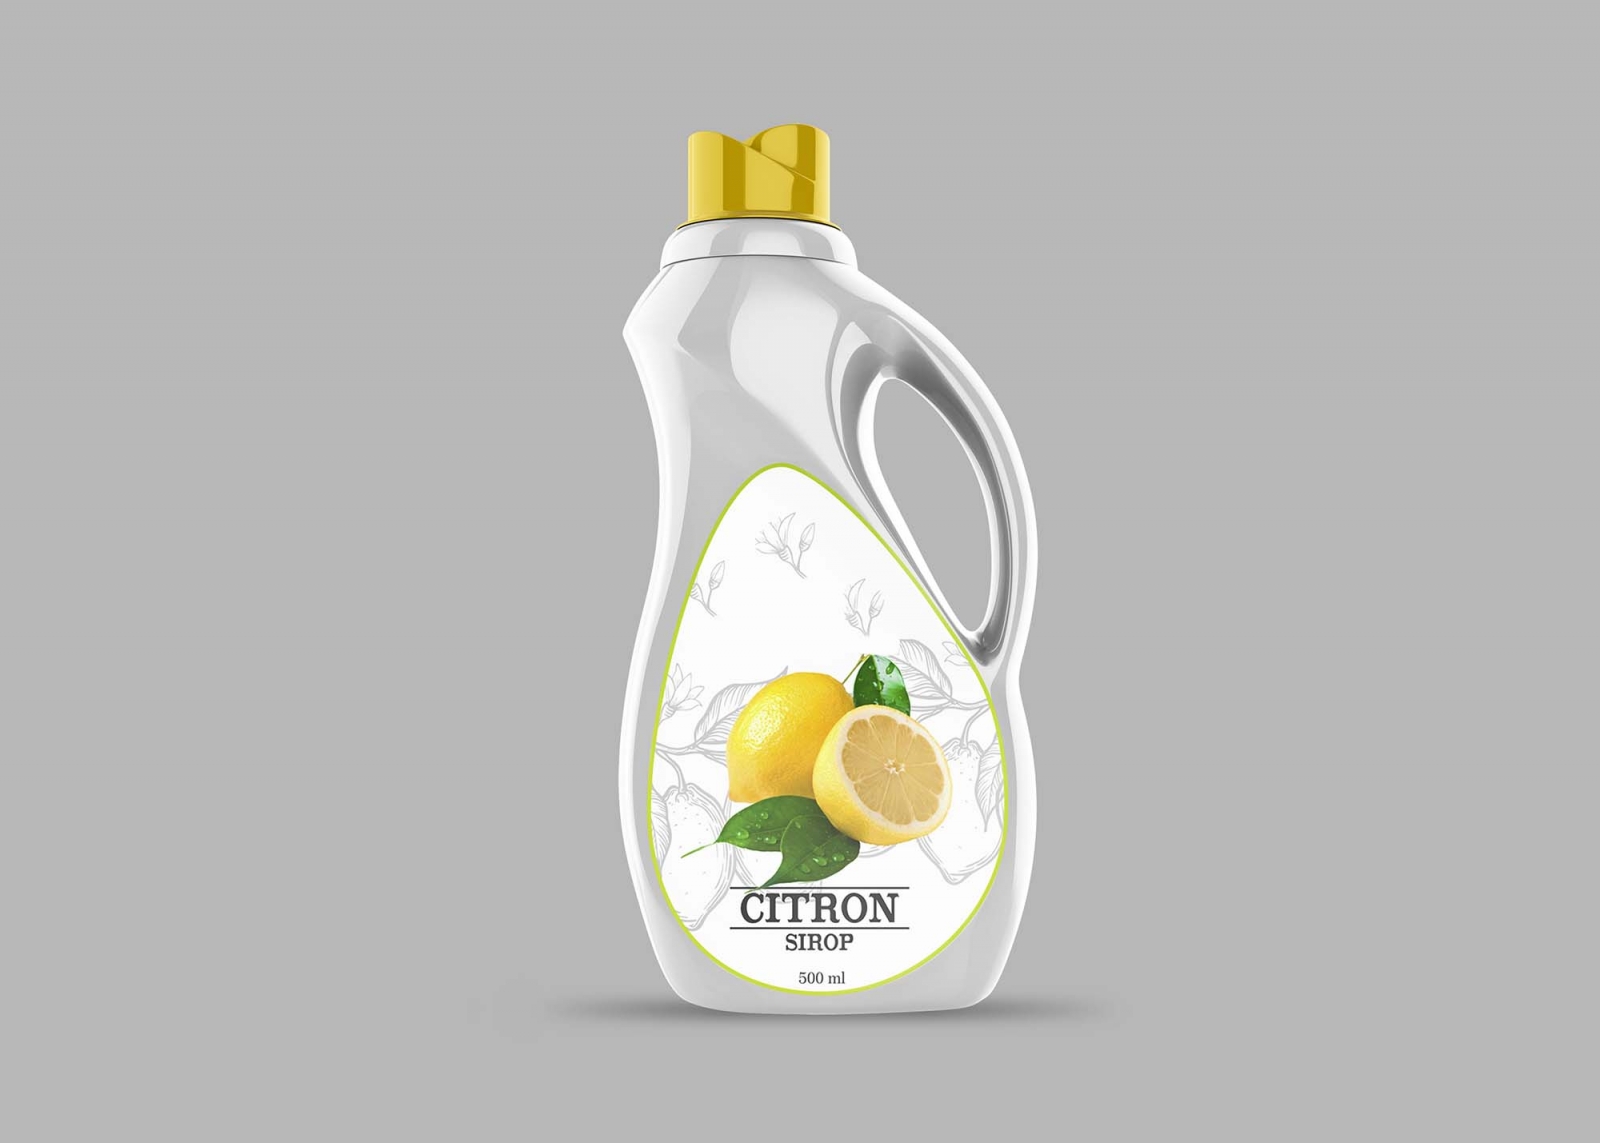 Download Mockup de garrafa de detergente Grátis - Criativo.Design